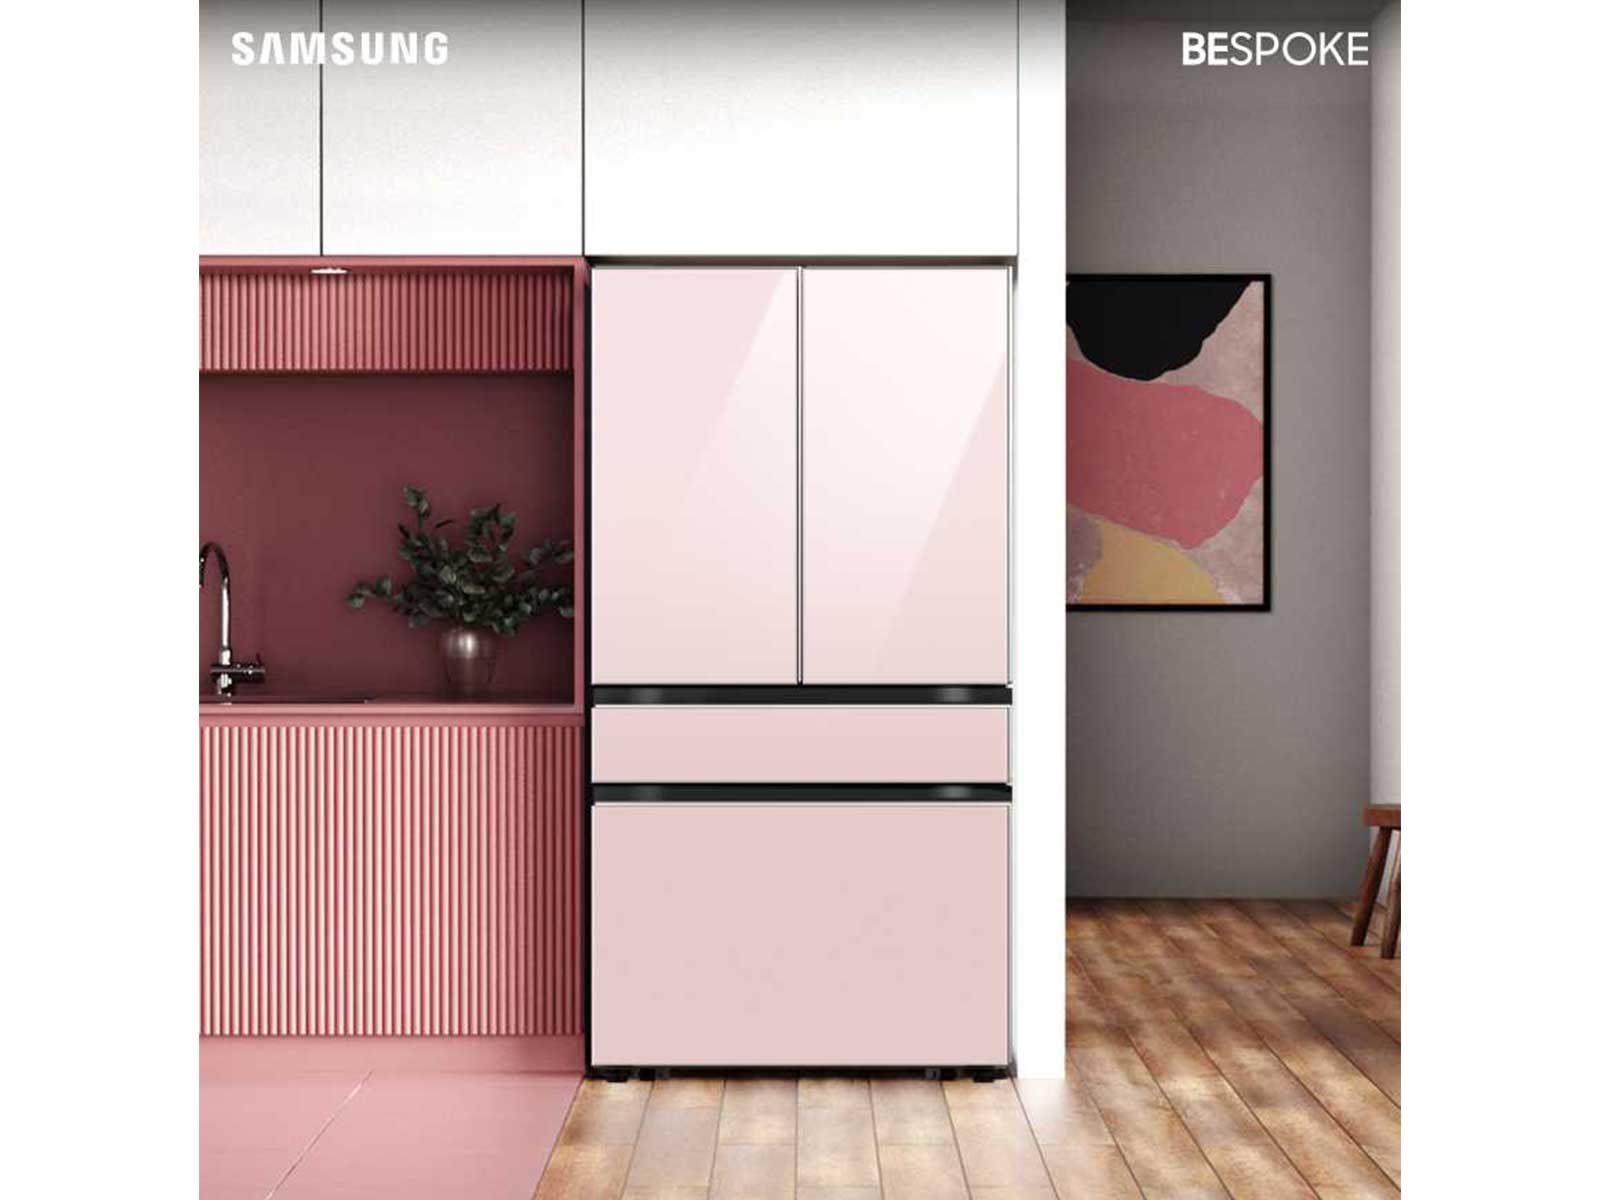 Bespoke 4-Door French Door Refrigerator (29 cu. ft.) with Customizable Door Panel Colors and Beve... | Samsung